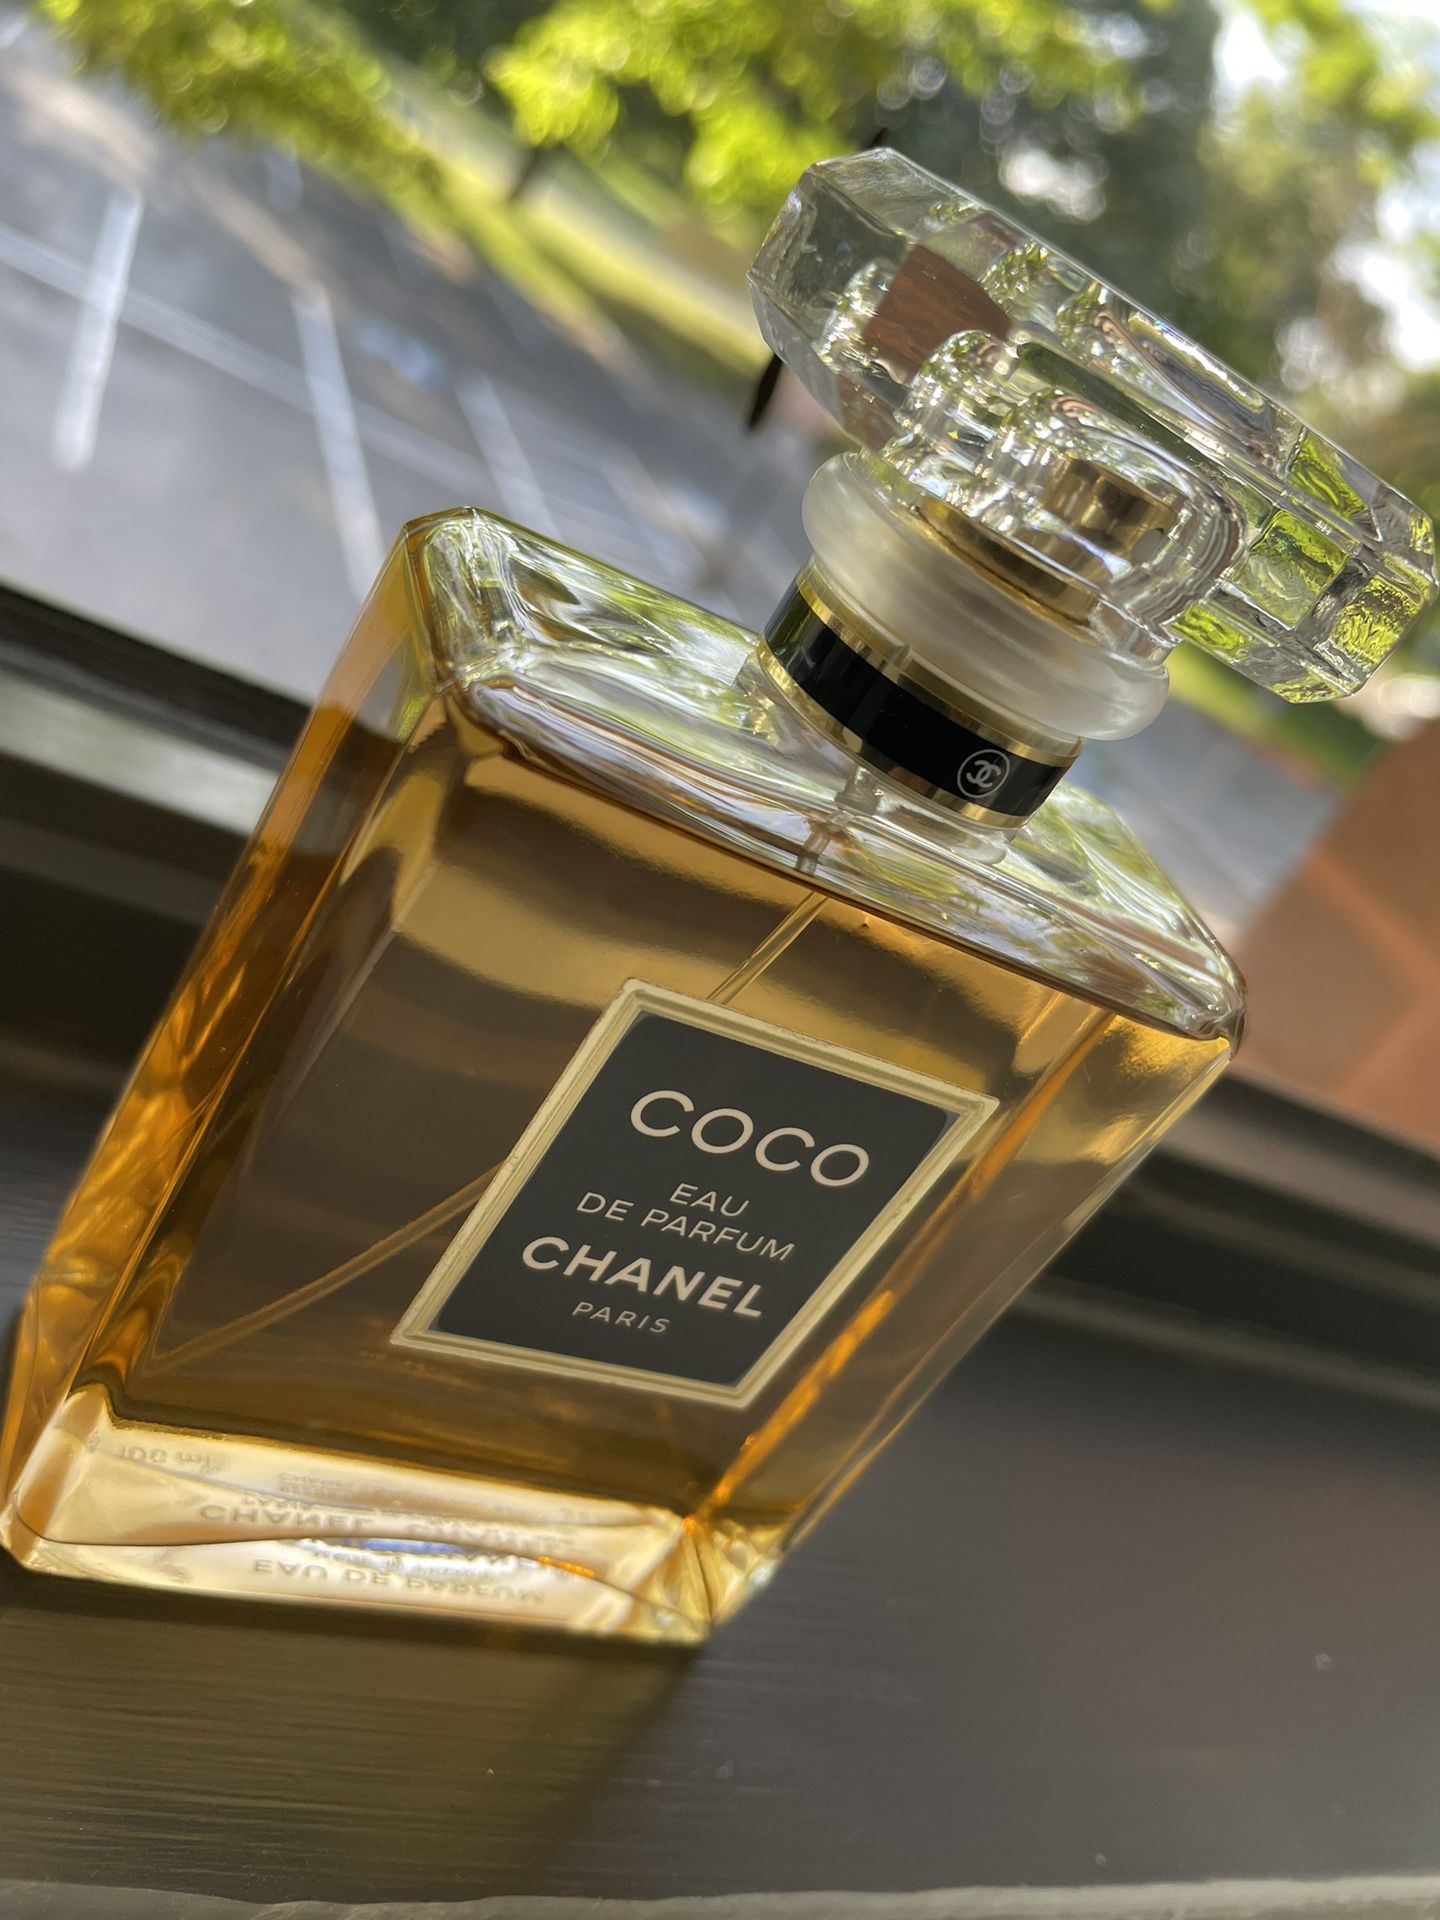 COCO “Eau de Parfum” CHANEL Paris 3.4 FL 100 M.L. for Sale in Ellicott  City, MD - OfferUp